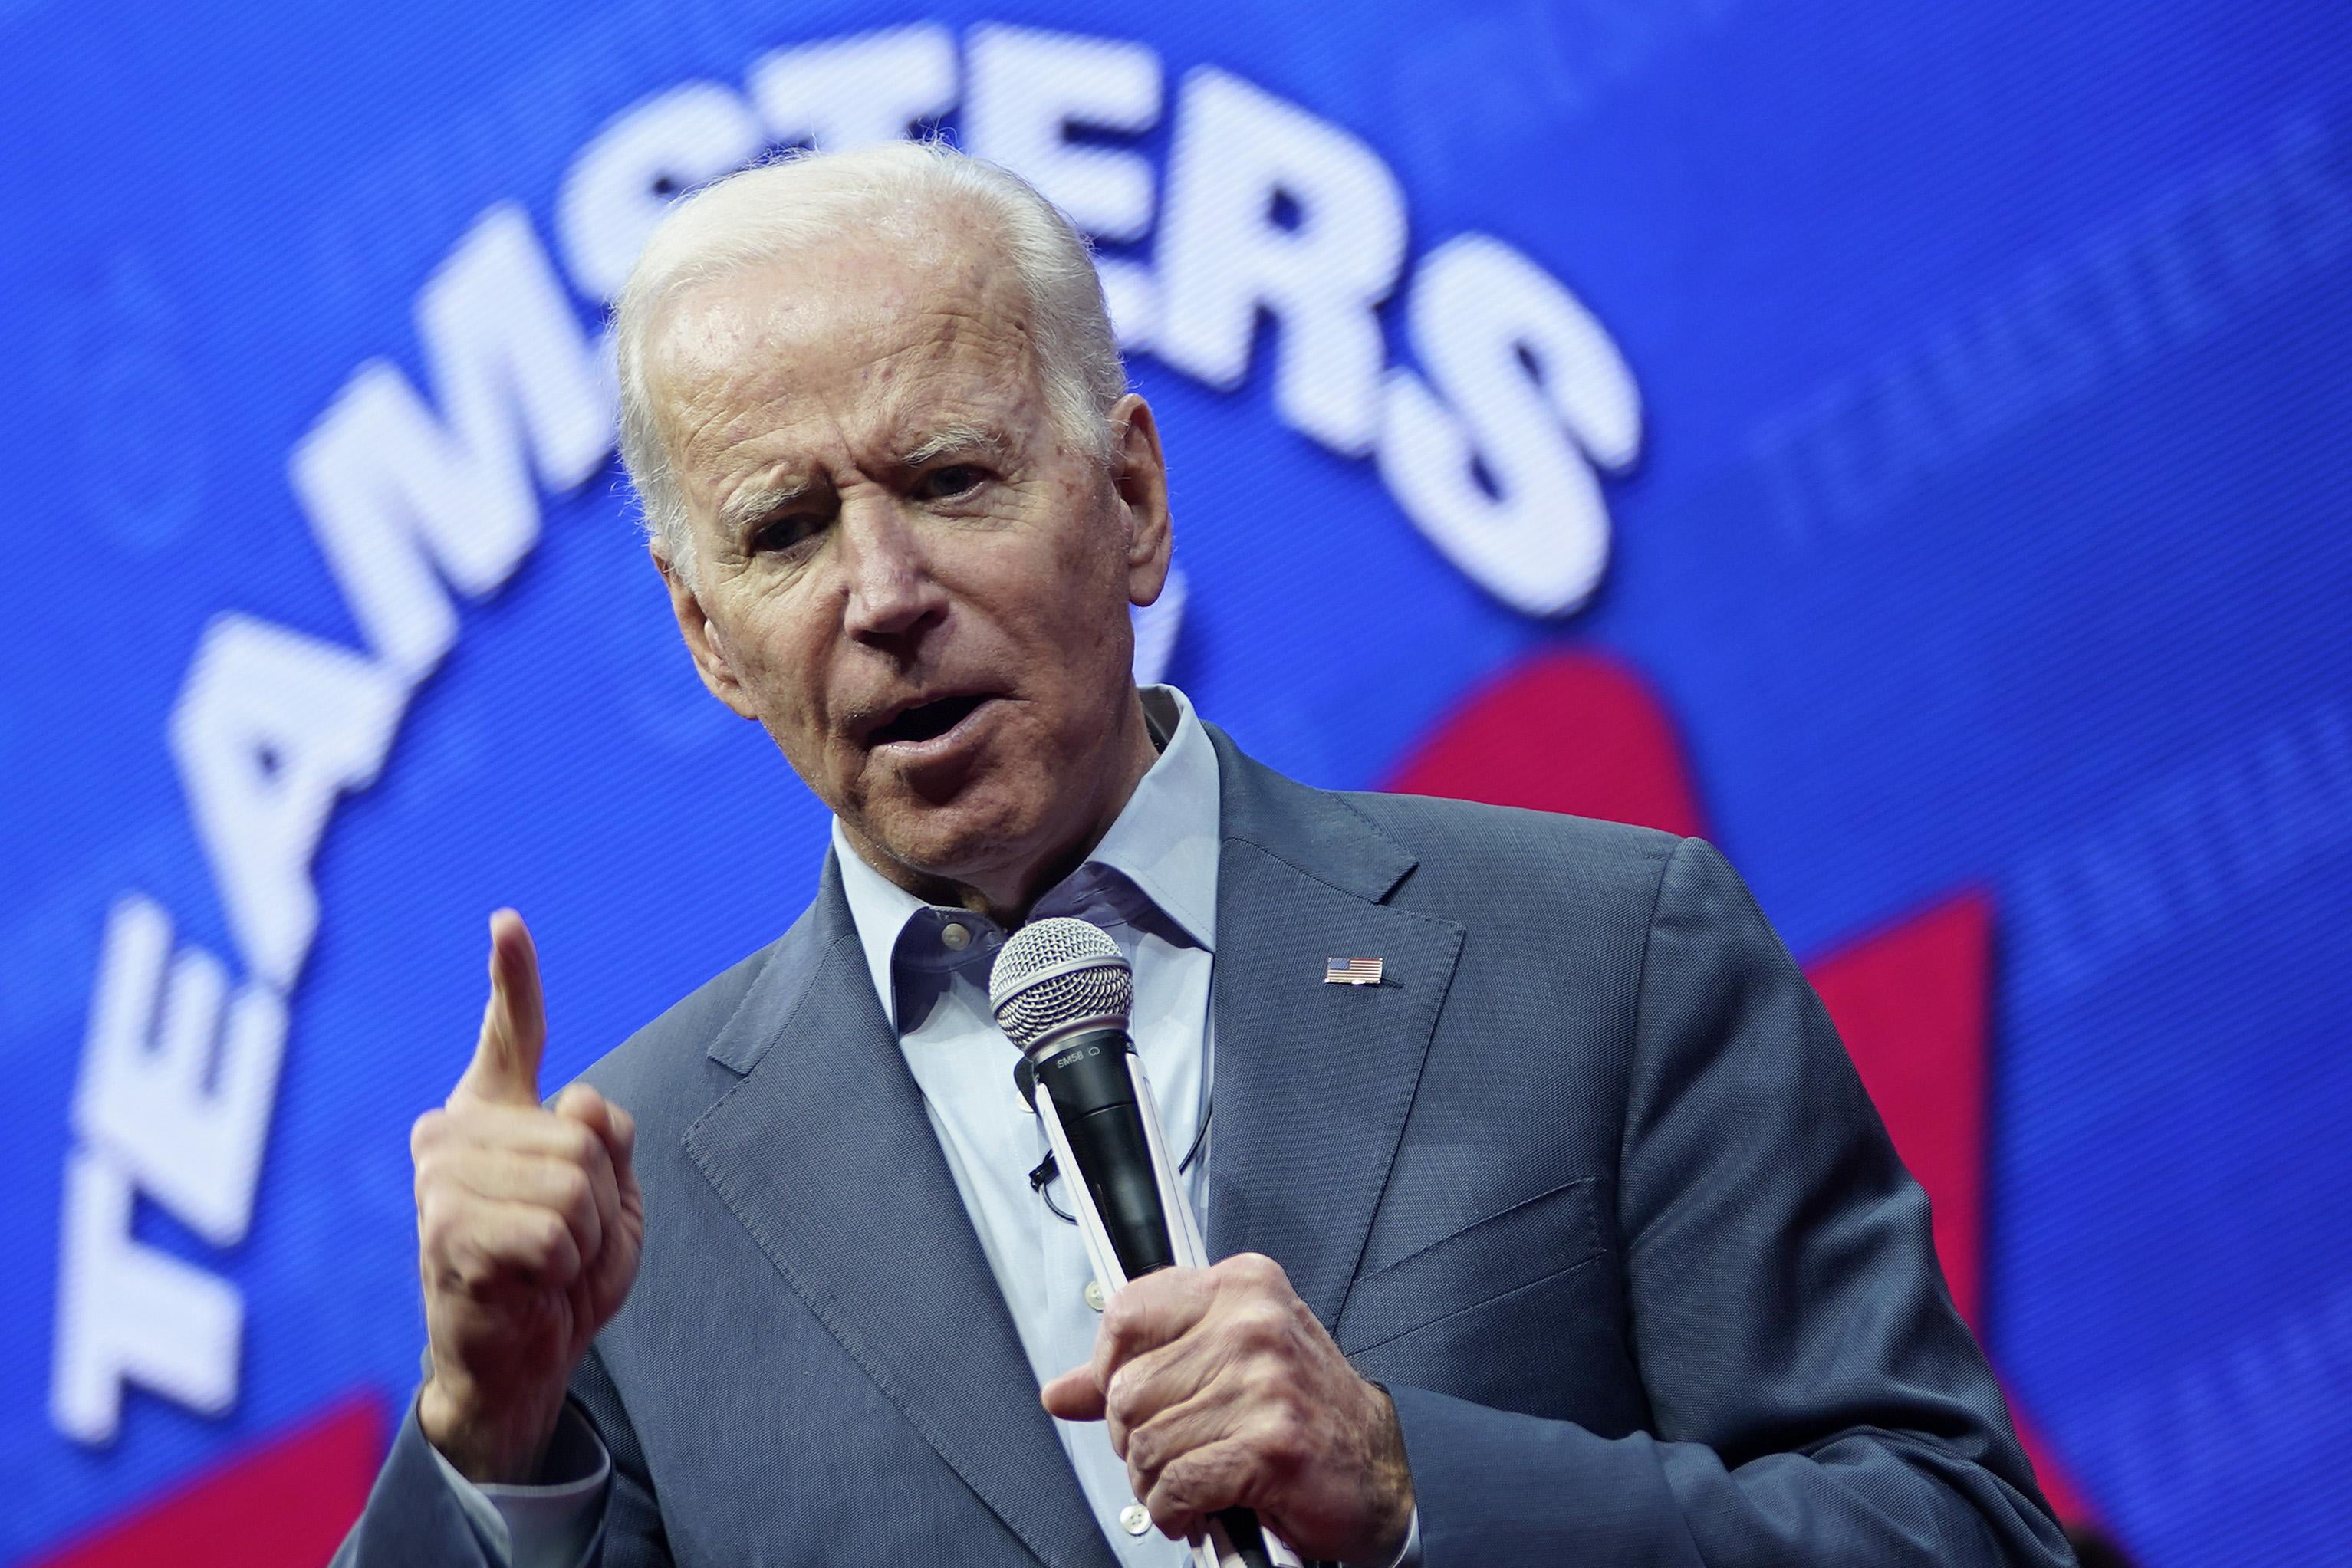 Biden speaks onstage at the Teamsters Vote 2020 Presidential Candidate Forum on Dec. 7 in Cedar Rapids, Iowa.